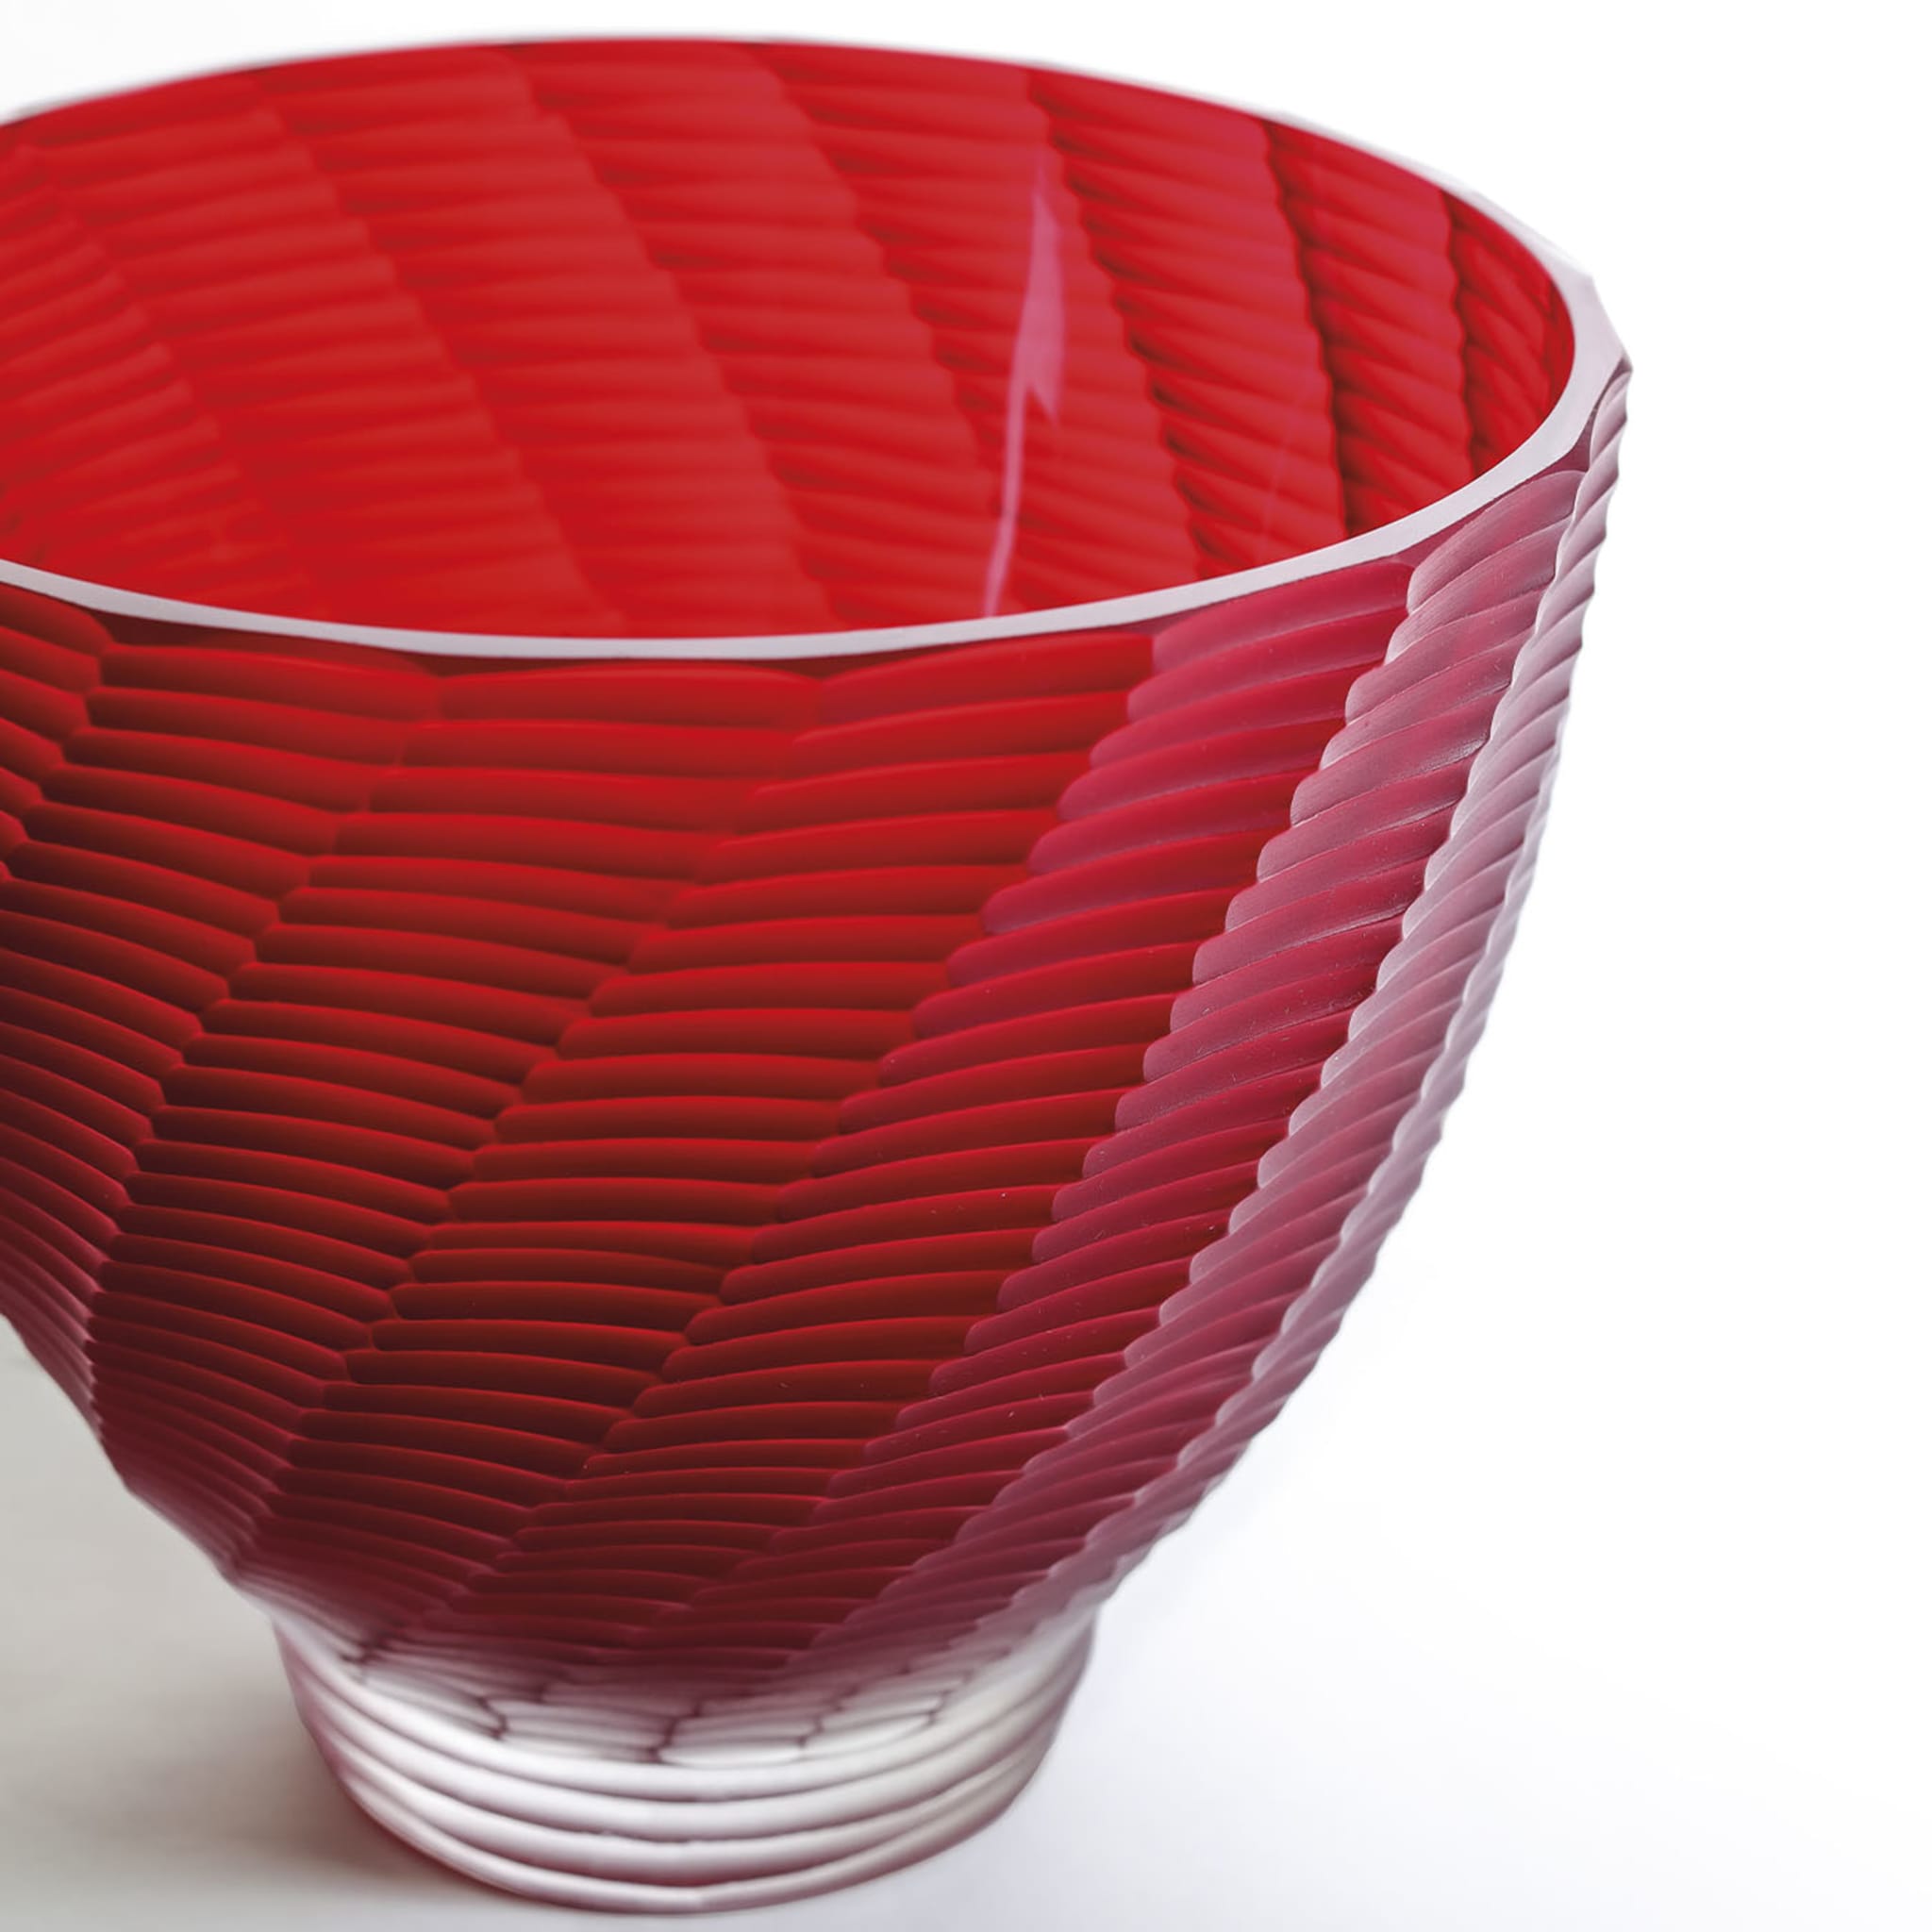 Red Murano Glass Vase - Alternative view 1